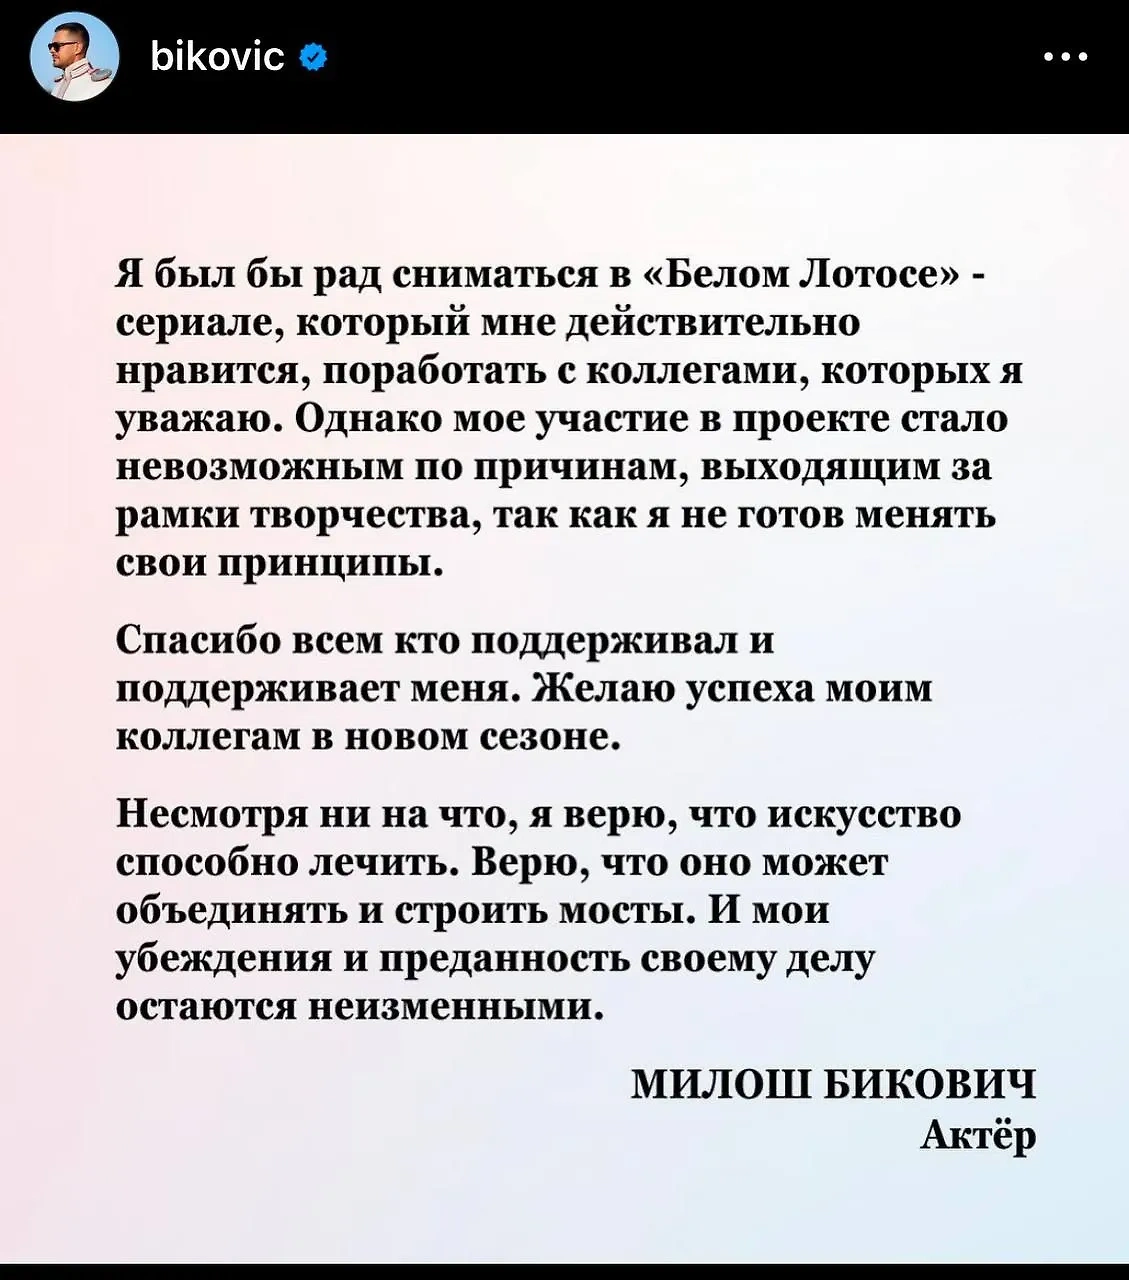 Актёр Милош Бикович отреагировал на решение HBO снять его с роли в "Белом лотосе". Фото © Instagram (соцсеть запрещена в РФ; принадлежит корпорации Meta, которая признана в РФ экстремистской) / bikovic